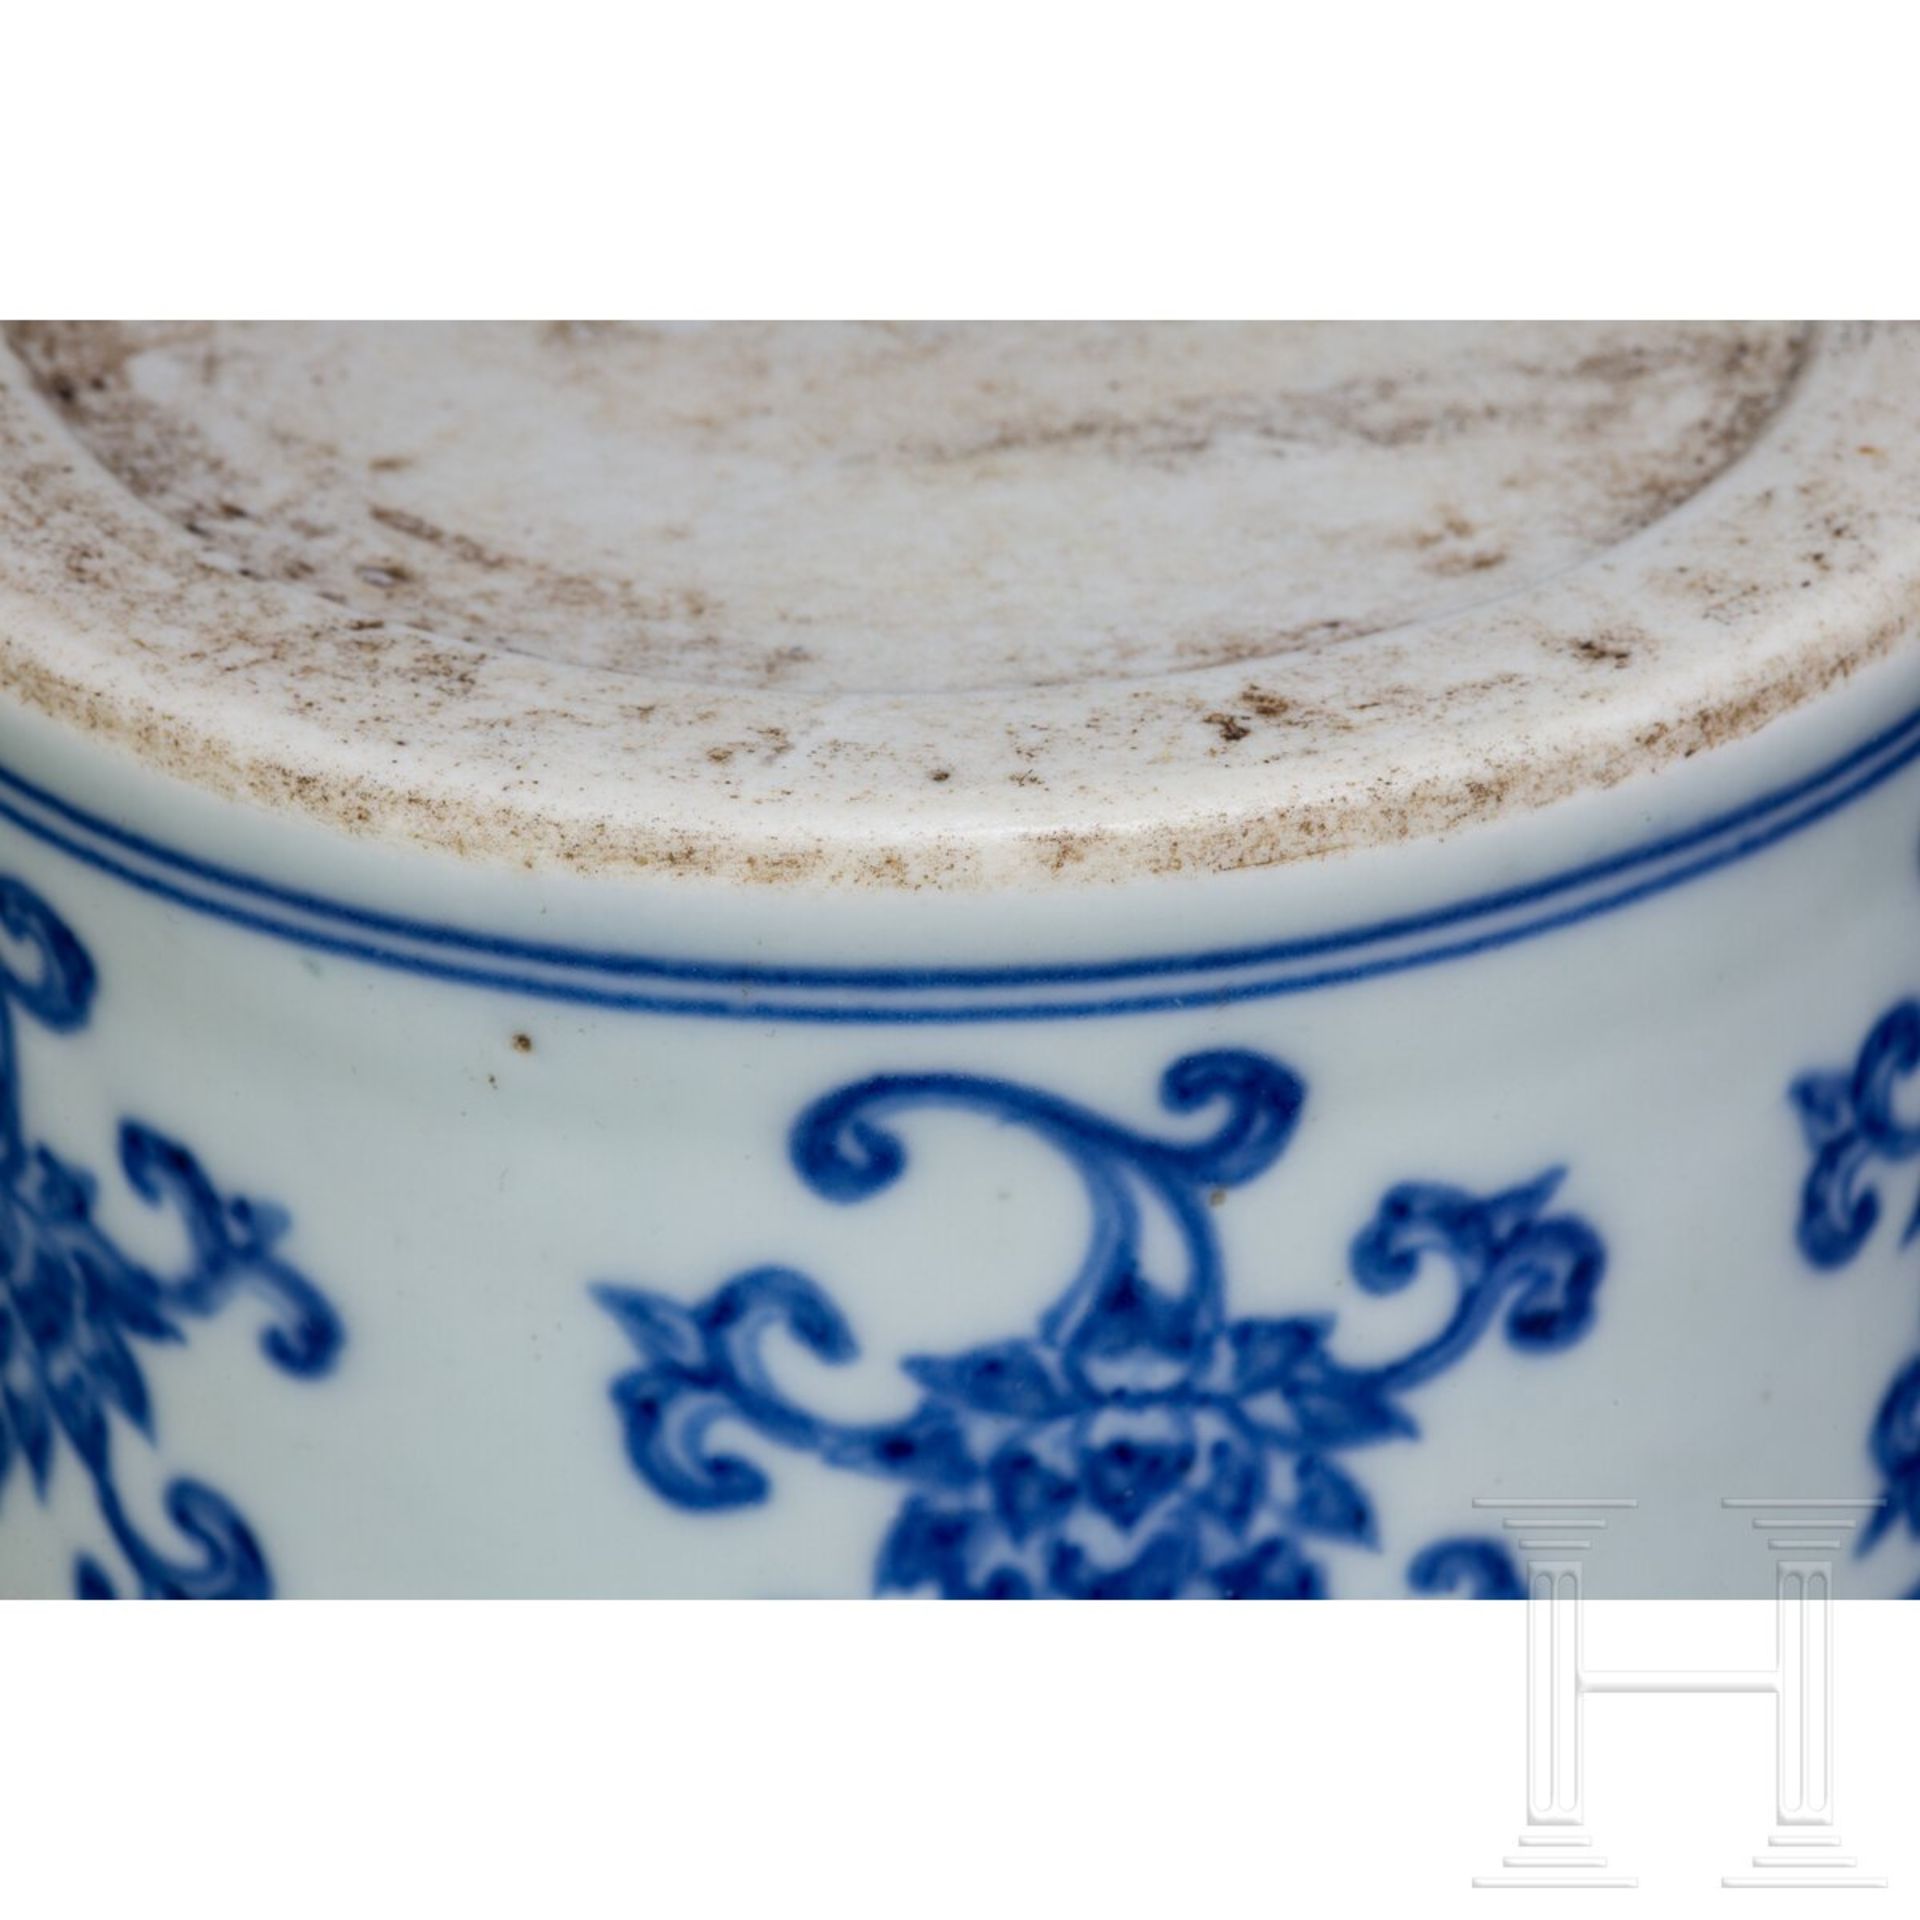 Blau-weiße Meiping-Vase im Ming-Stil, China, wahrscheinlich 19./20. Jhdt. - Bild 7 aus 16